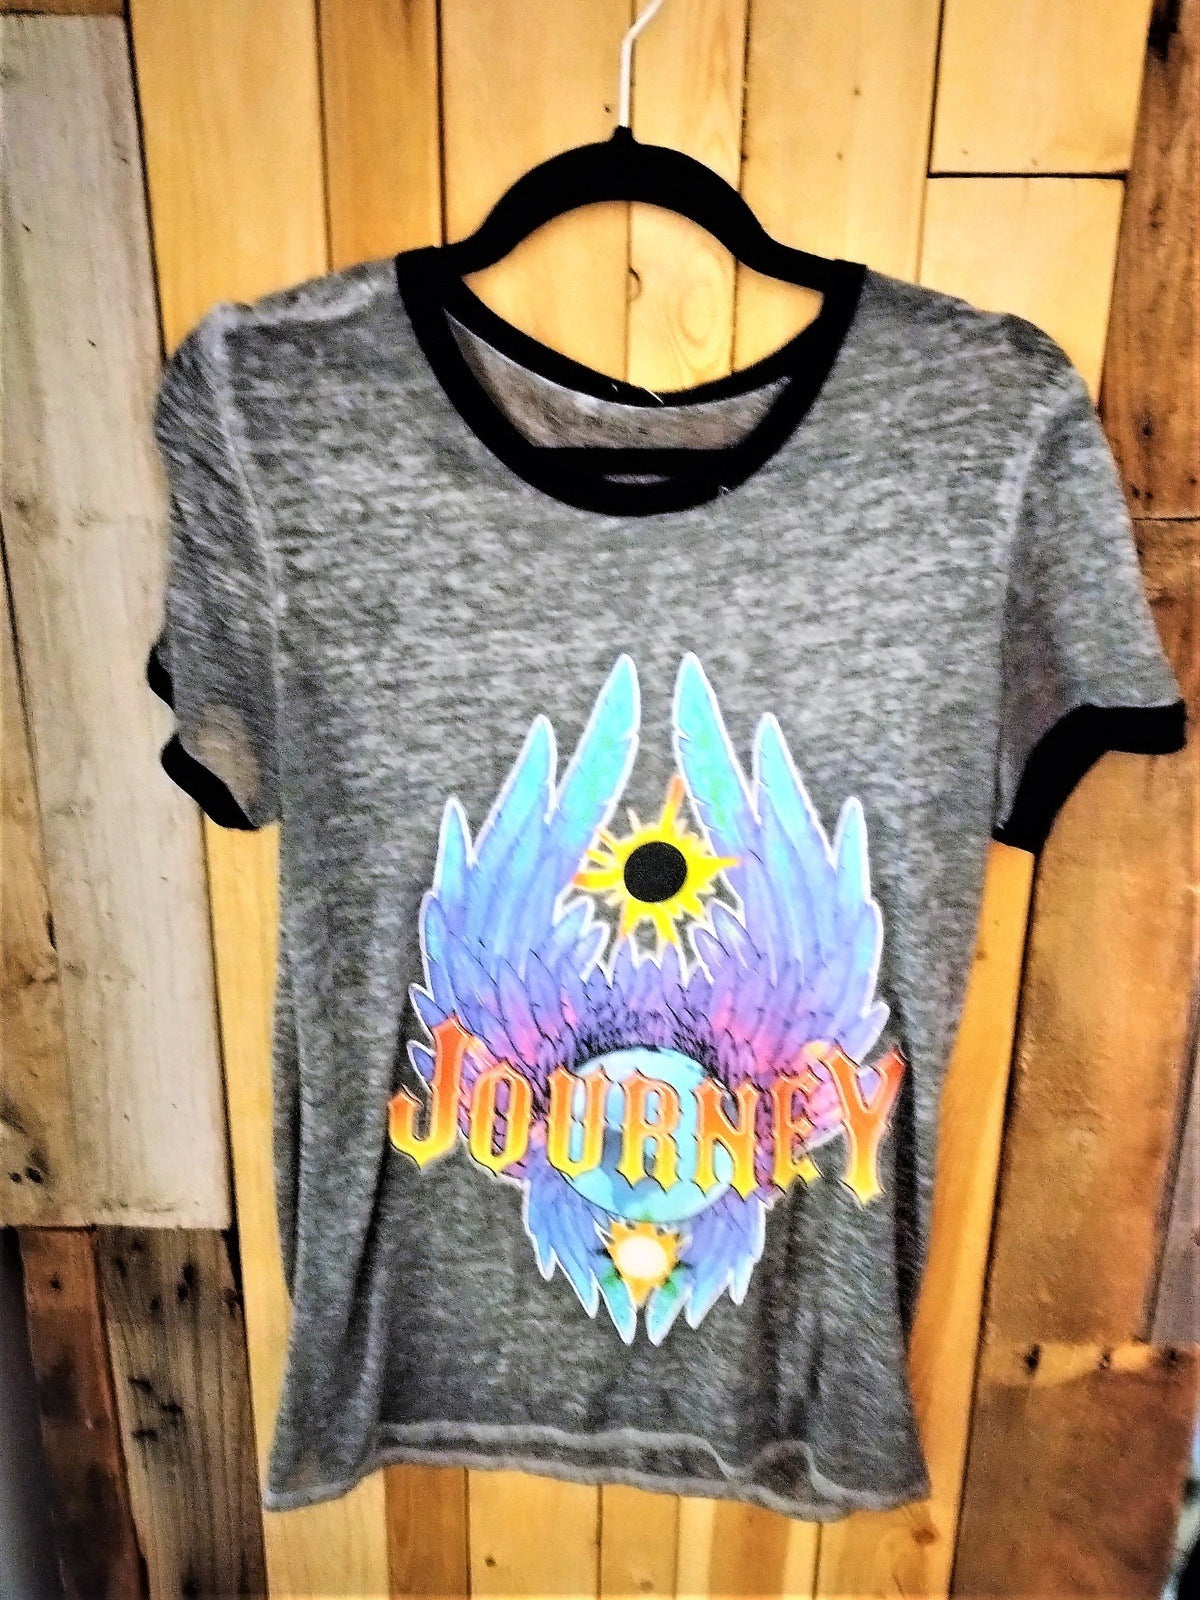 Journey Women's Tee Shirt Semi Sheer Size Medium